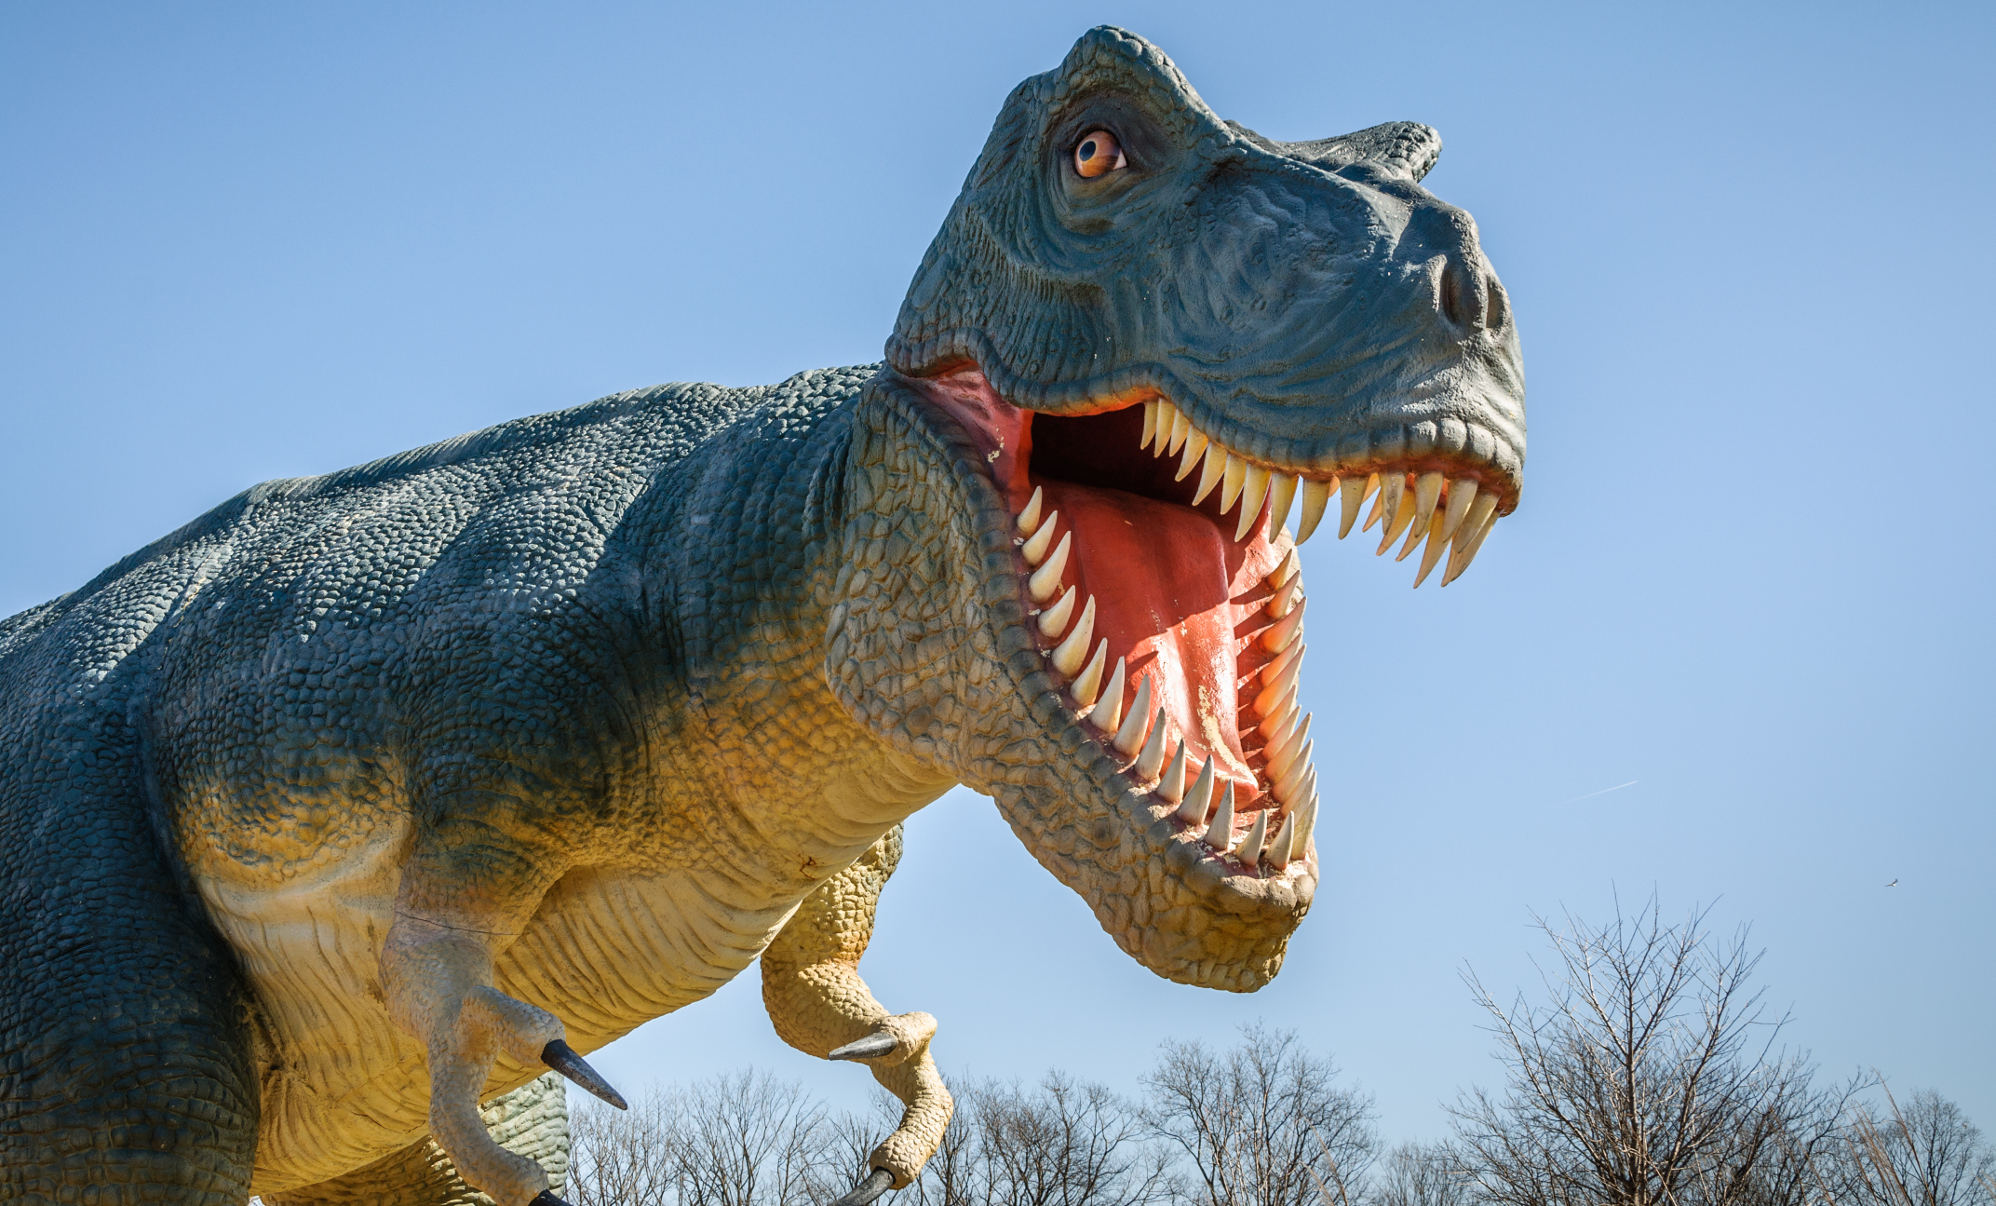 Dinosaurios en Utrera: Dinosaurs Tour, la exposición más real